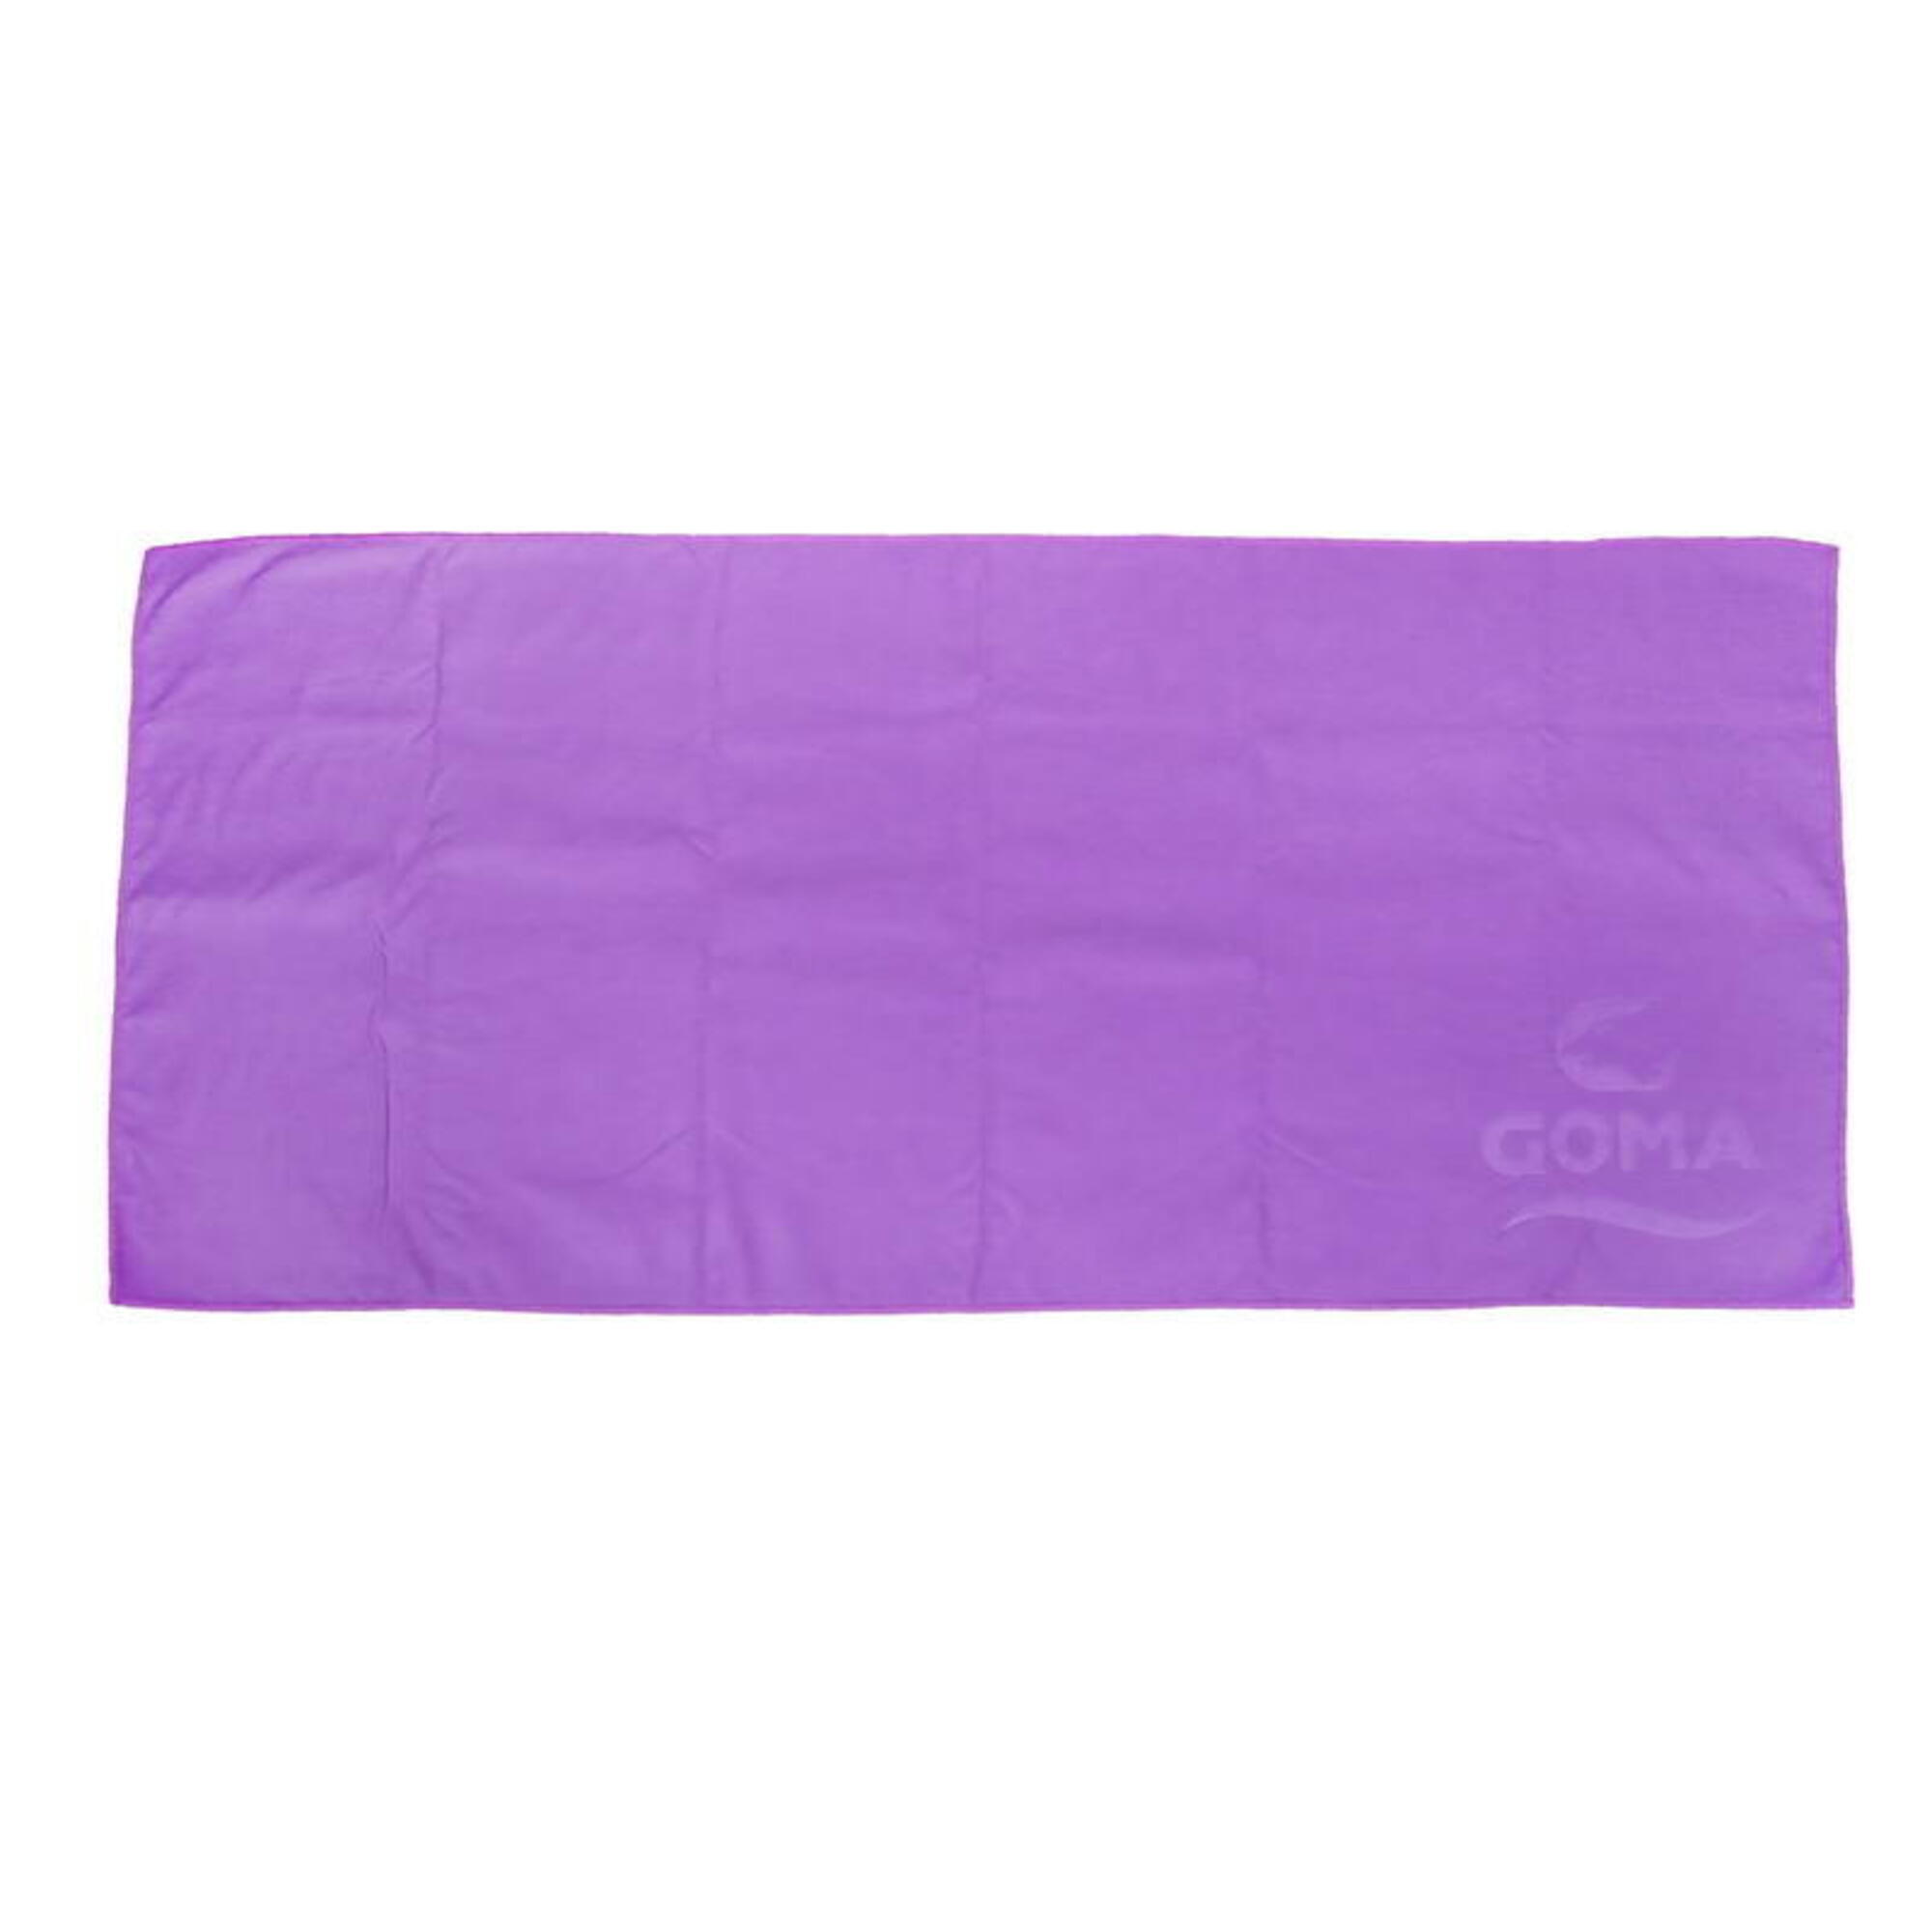 微纖吸水毛巾, 紫色